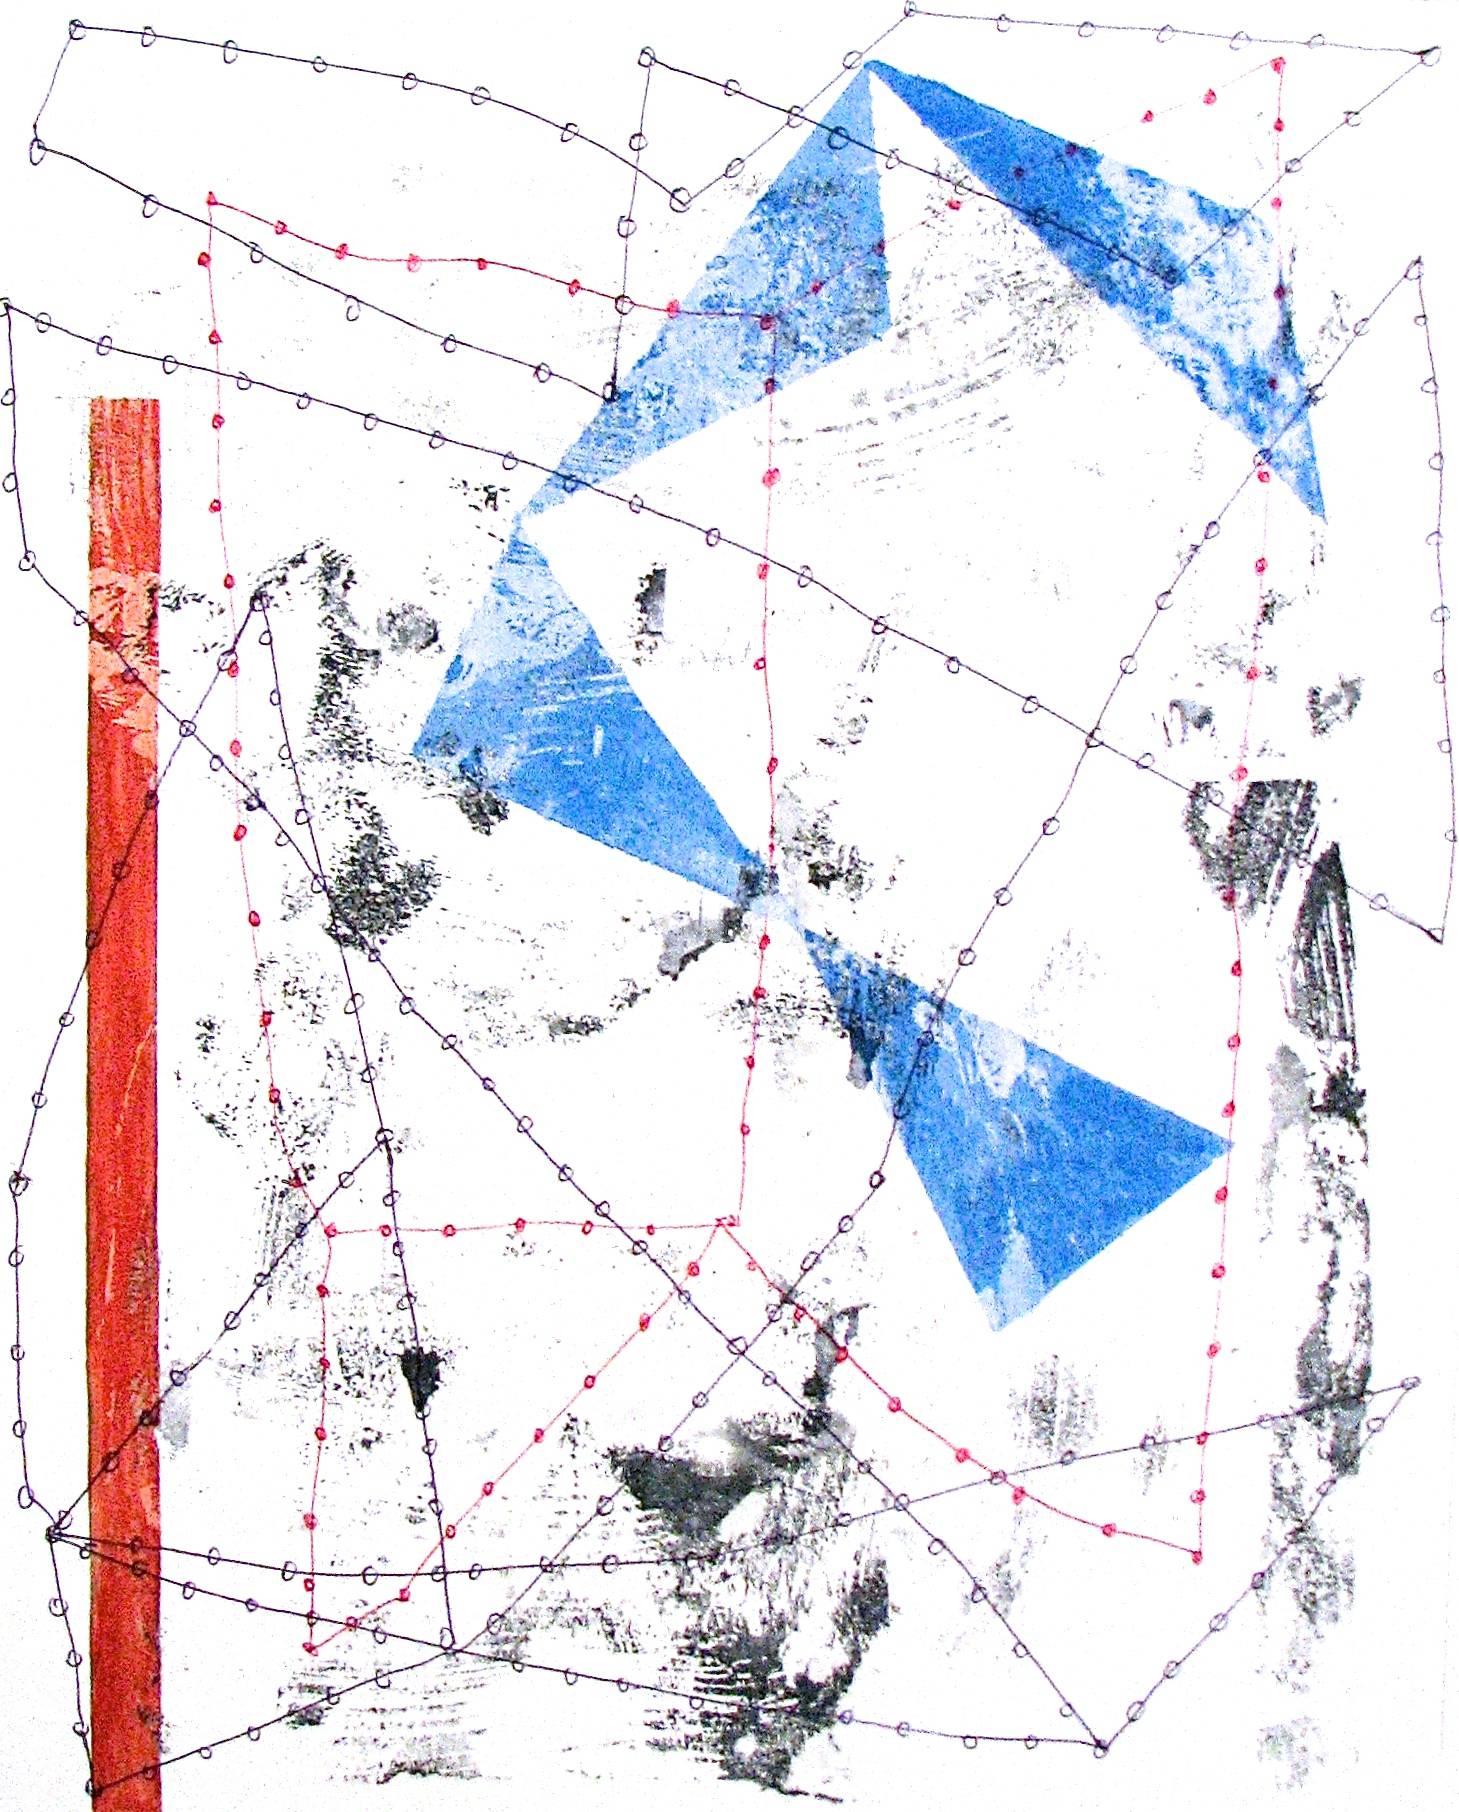 Abstract Drawing Nancy Berlin - ""Changing Perceptions 2" - Techniques mixtes ludiques abstraites géométriques rouges, blanches et bleues